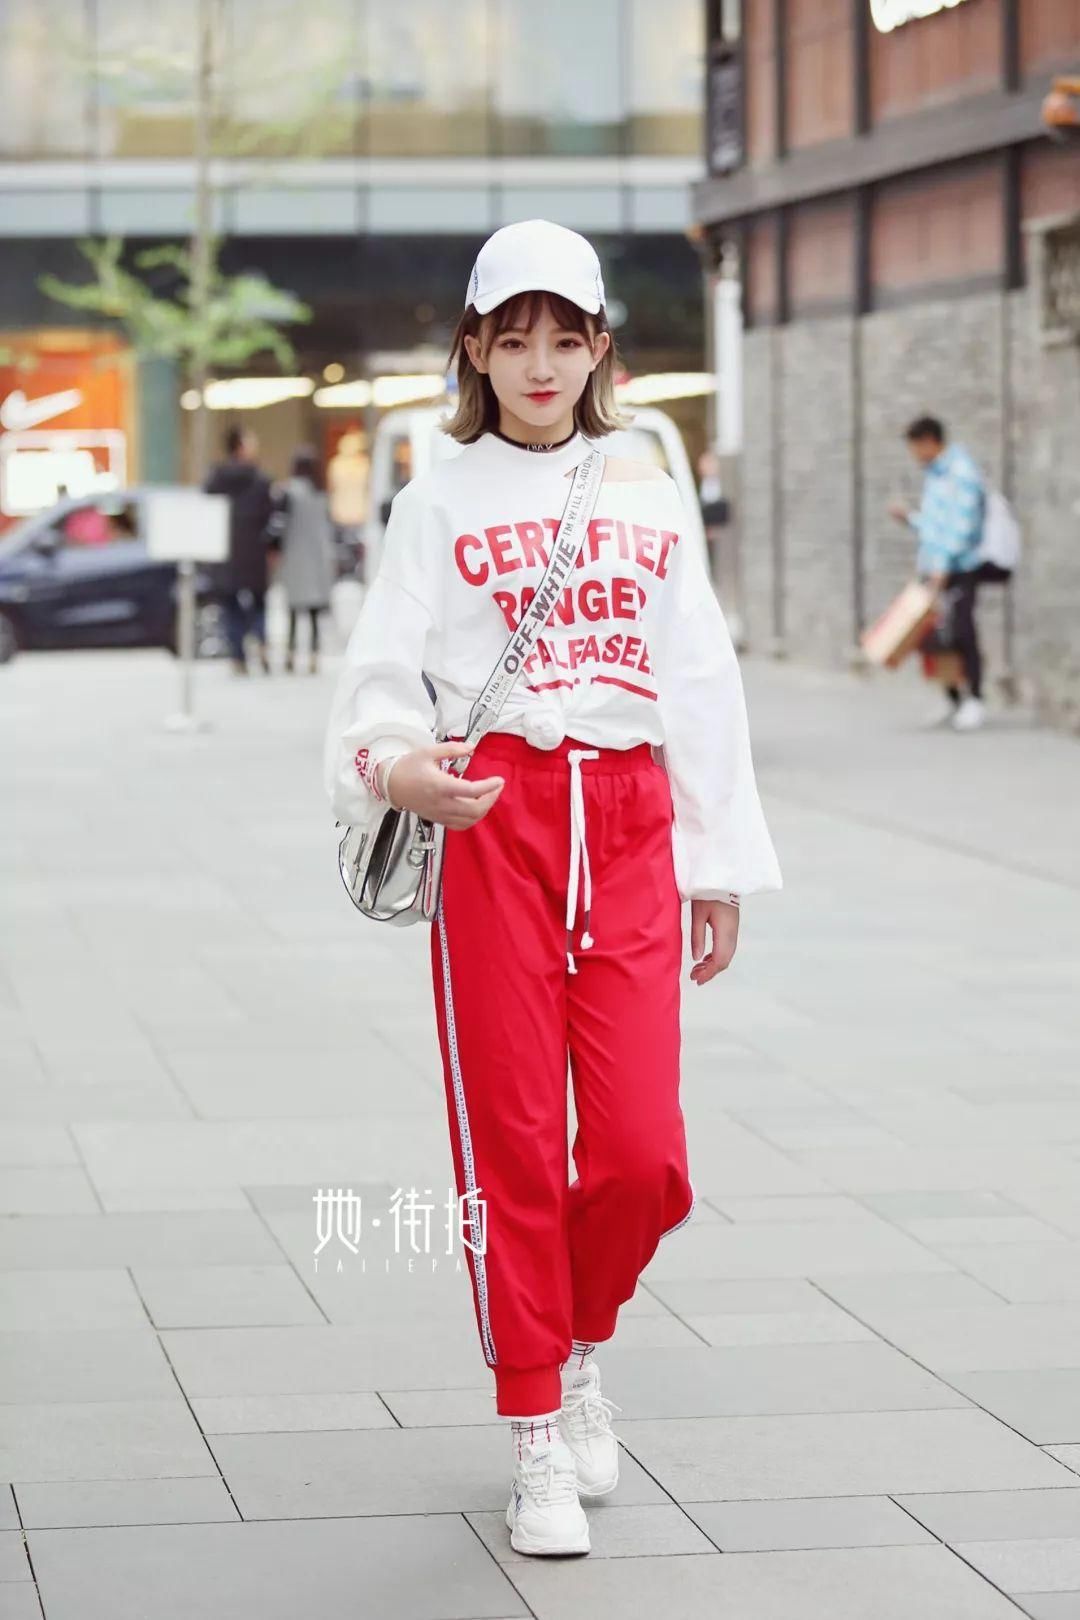 上海南京路街拍 最火校服裤,特别流行